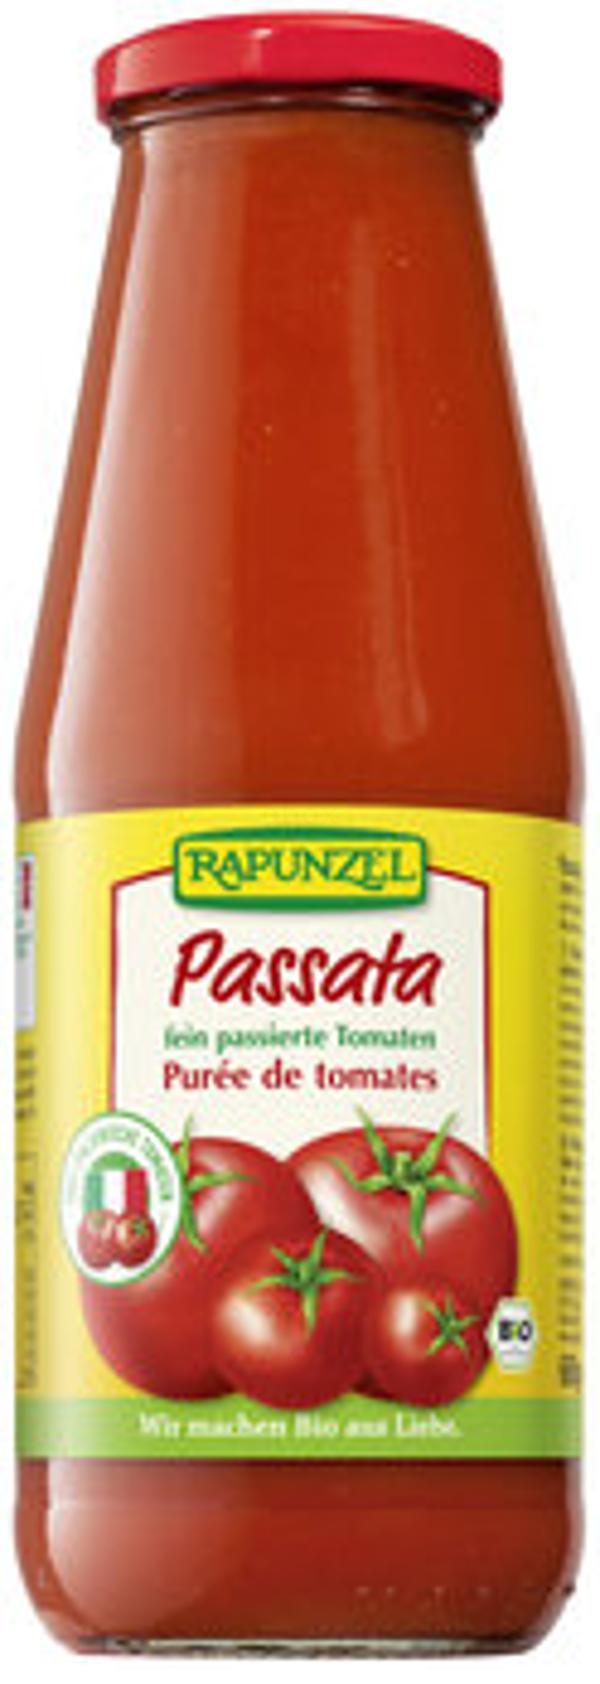 Produktfoto zu Tomaten Passata 680g